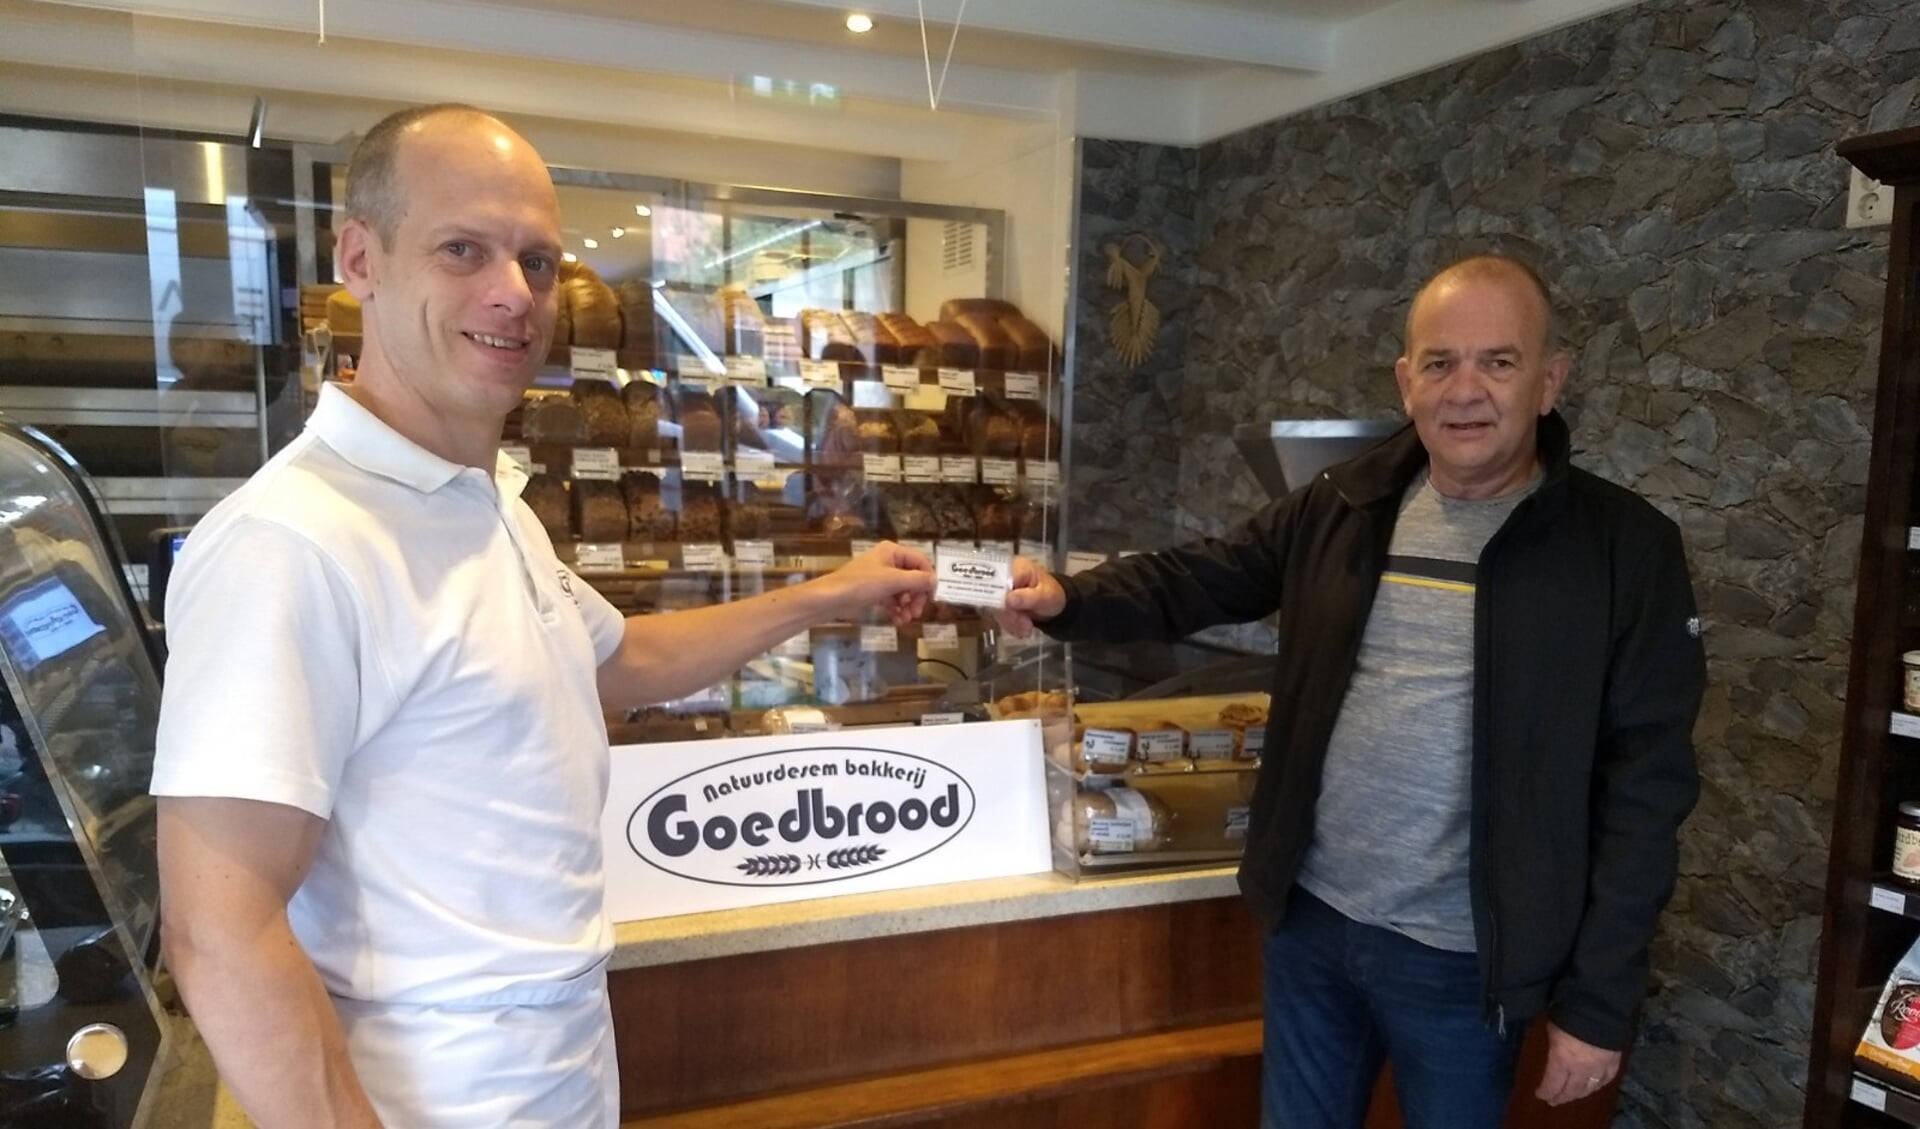 De heer Van der Wal neemt de waardebon ter waarde van € 50,- in ontvangst van bakker Roel van Bakkerij Goedbrood.